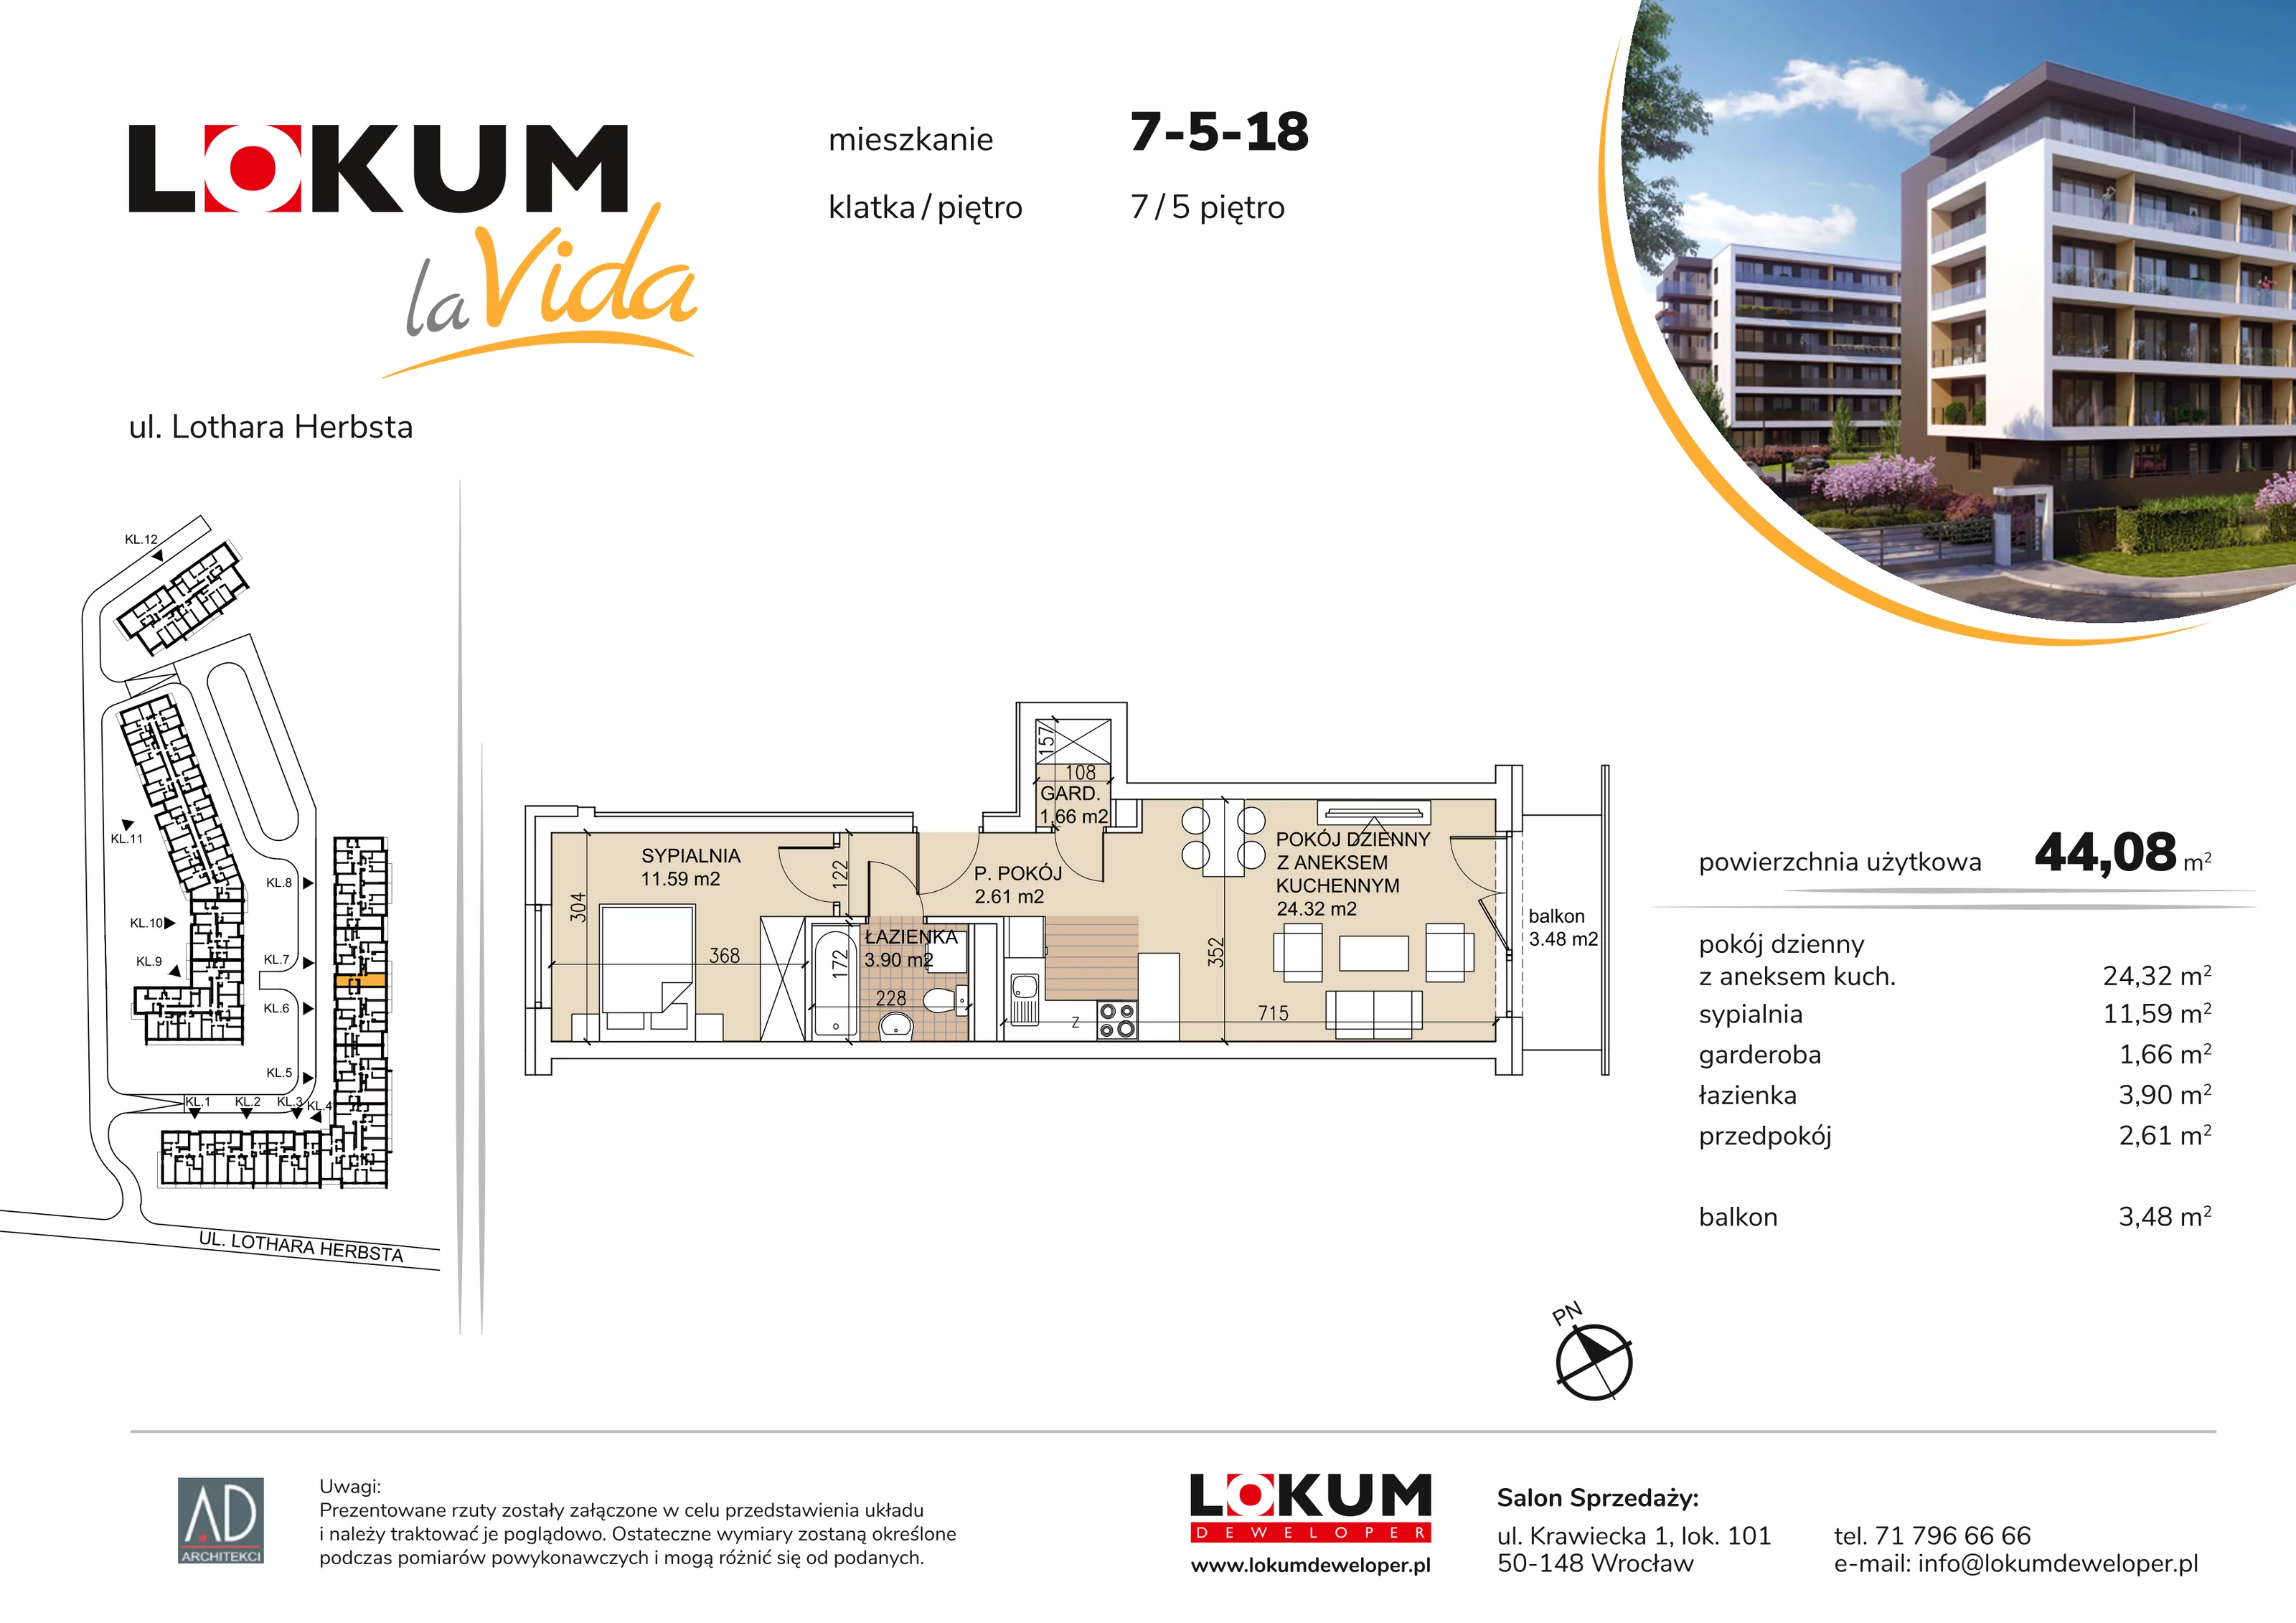 Mieszkanie 44,08 m², piętro 5, oferta nr 7-5-18, Lokum la Vida, Wrocław, Sołtysowice, ul. Lothara Herbsta